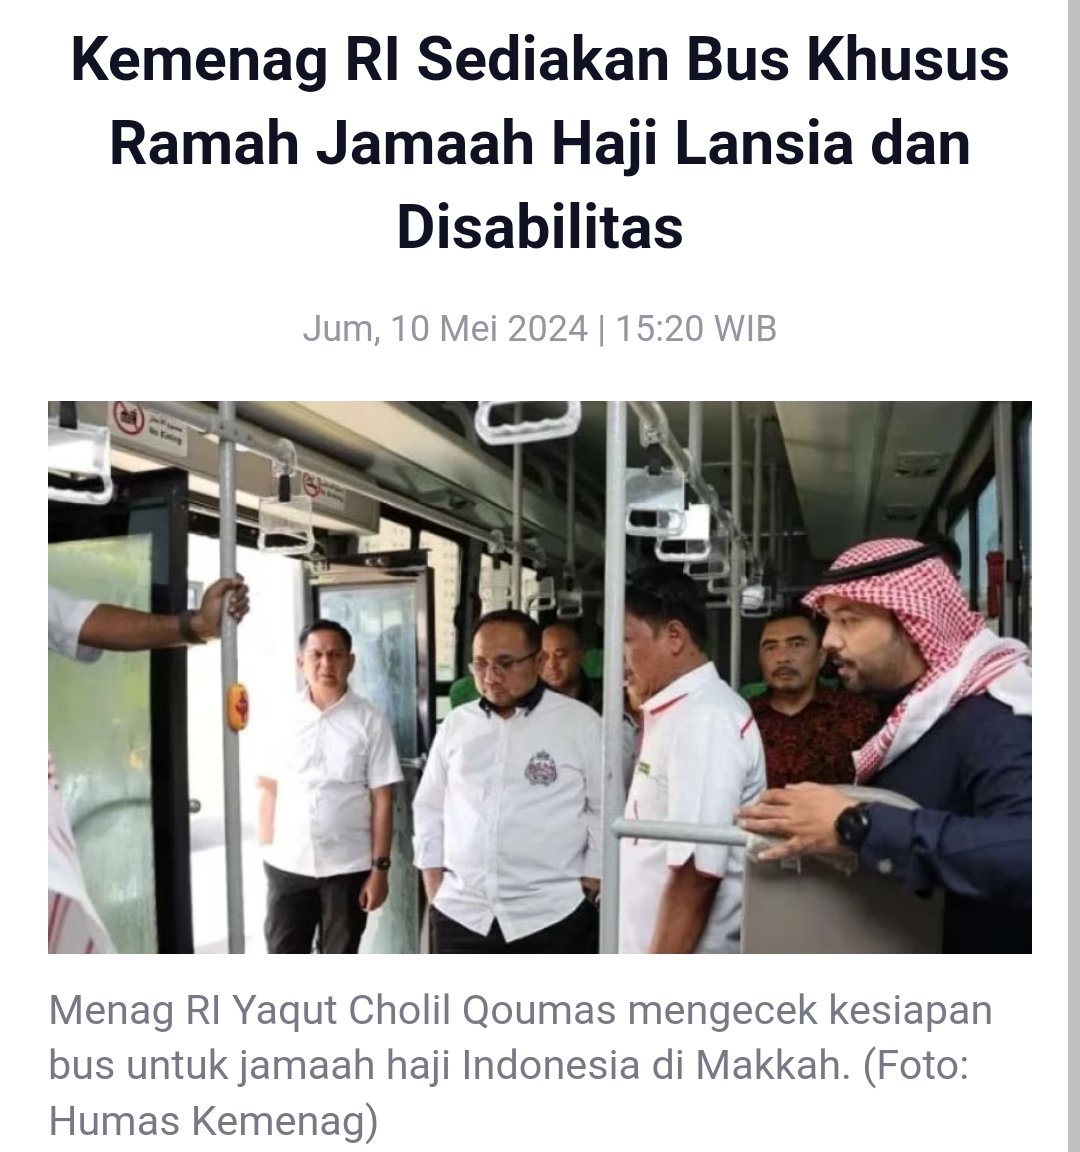 Menag @YaqutCQoumas gak tanggung² dalam menyiapkan pelayanan #HajiIndonesia terutama untuk lansia & disabilitas #Haji2024 Haji Ramah Lansia